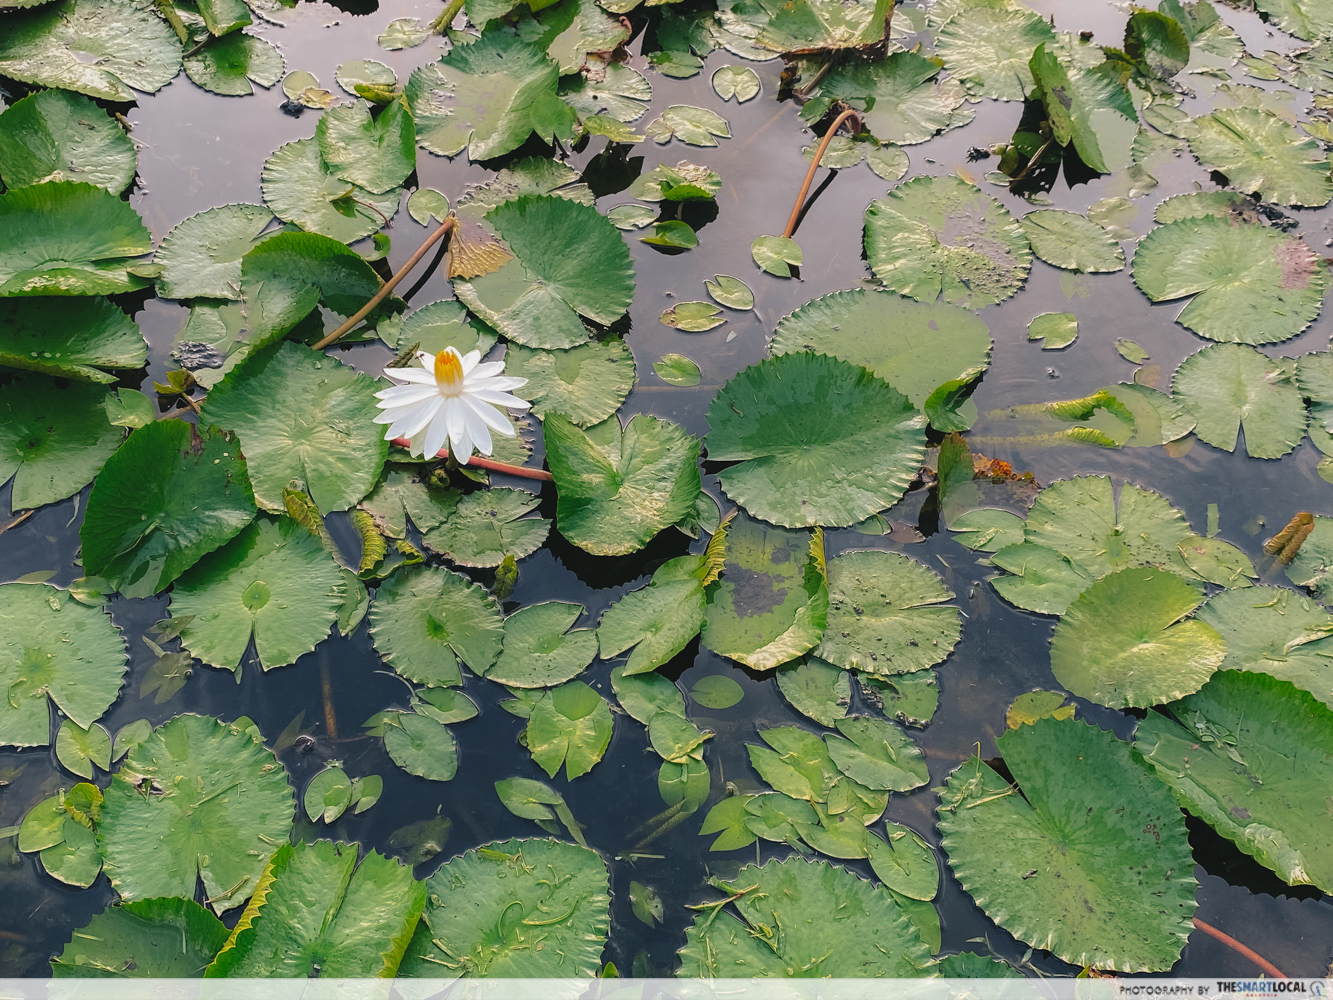 Penang Botanic Gardens - lily